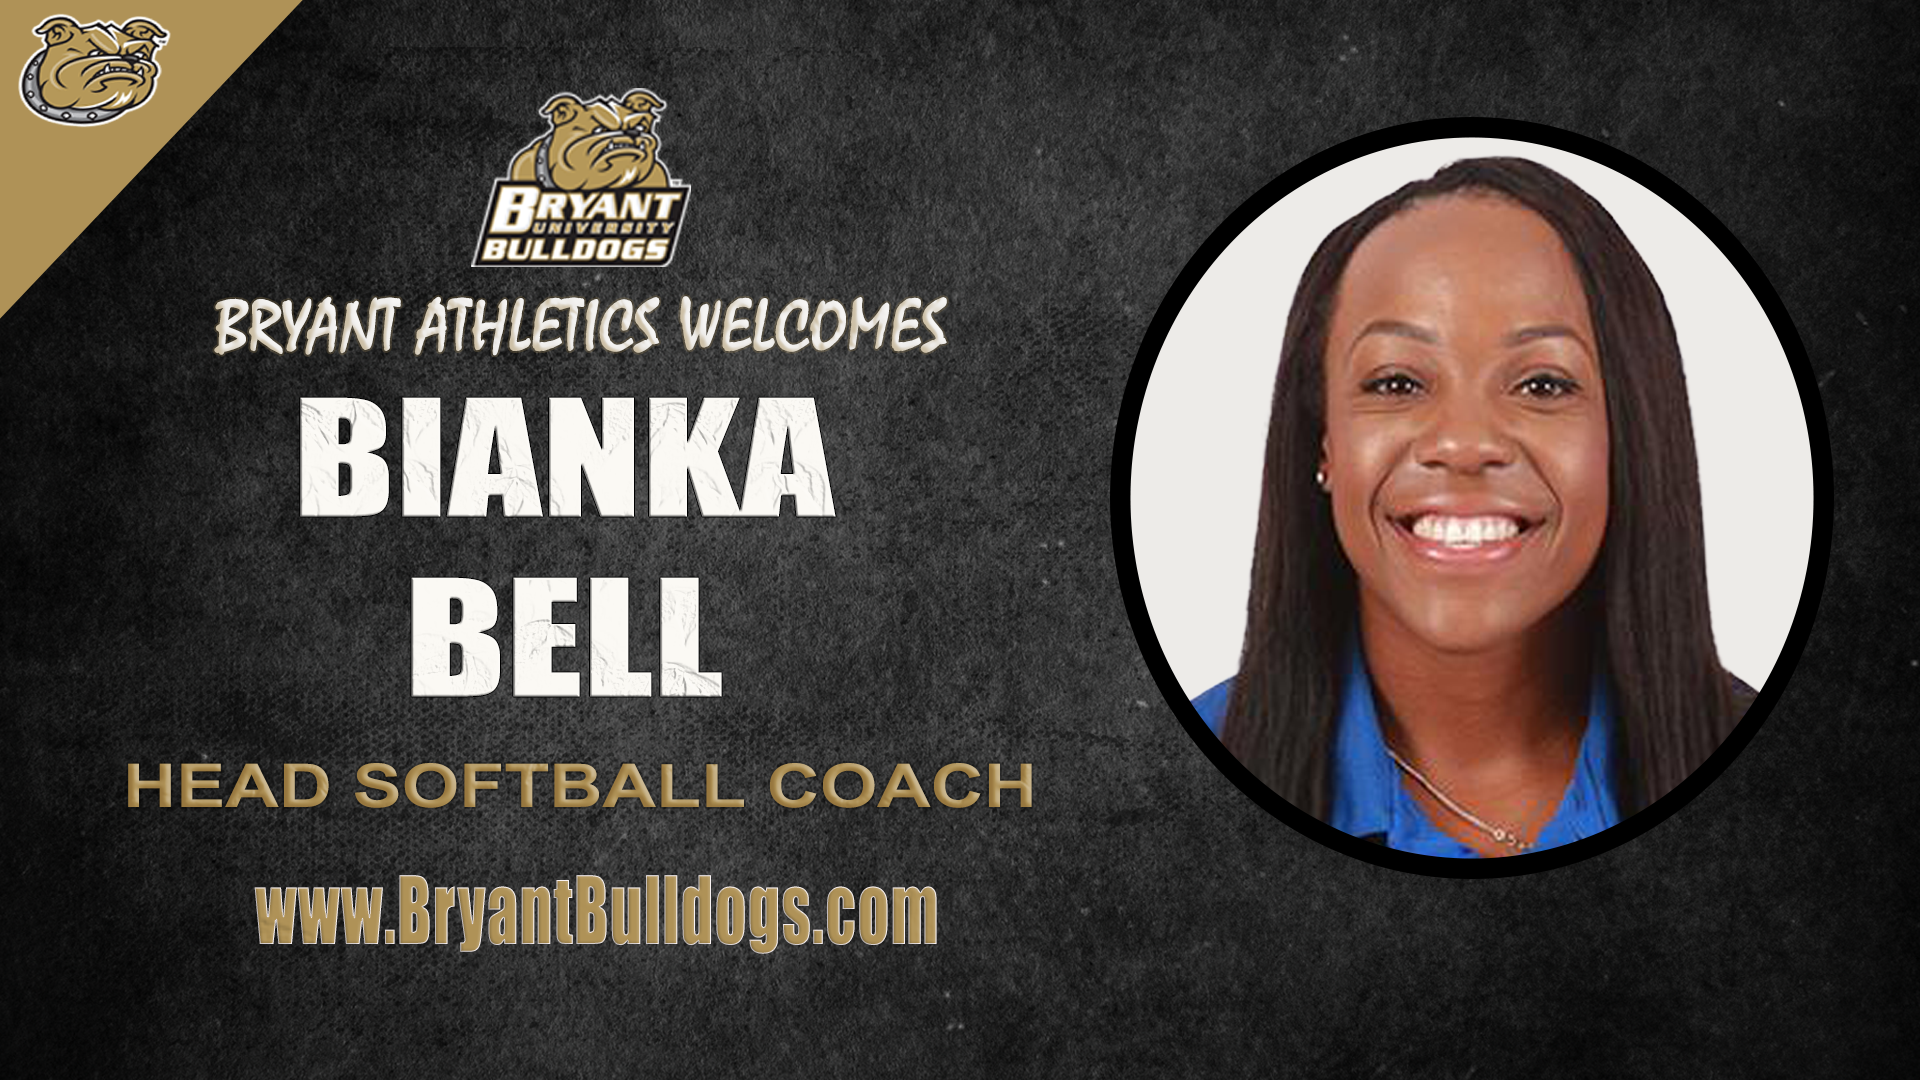 Bianka Bell named head softball coach